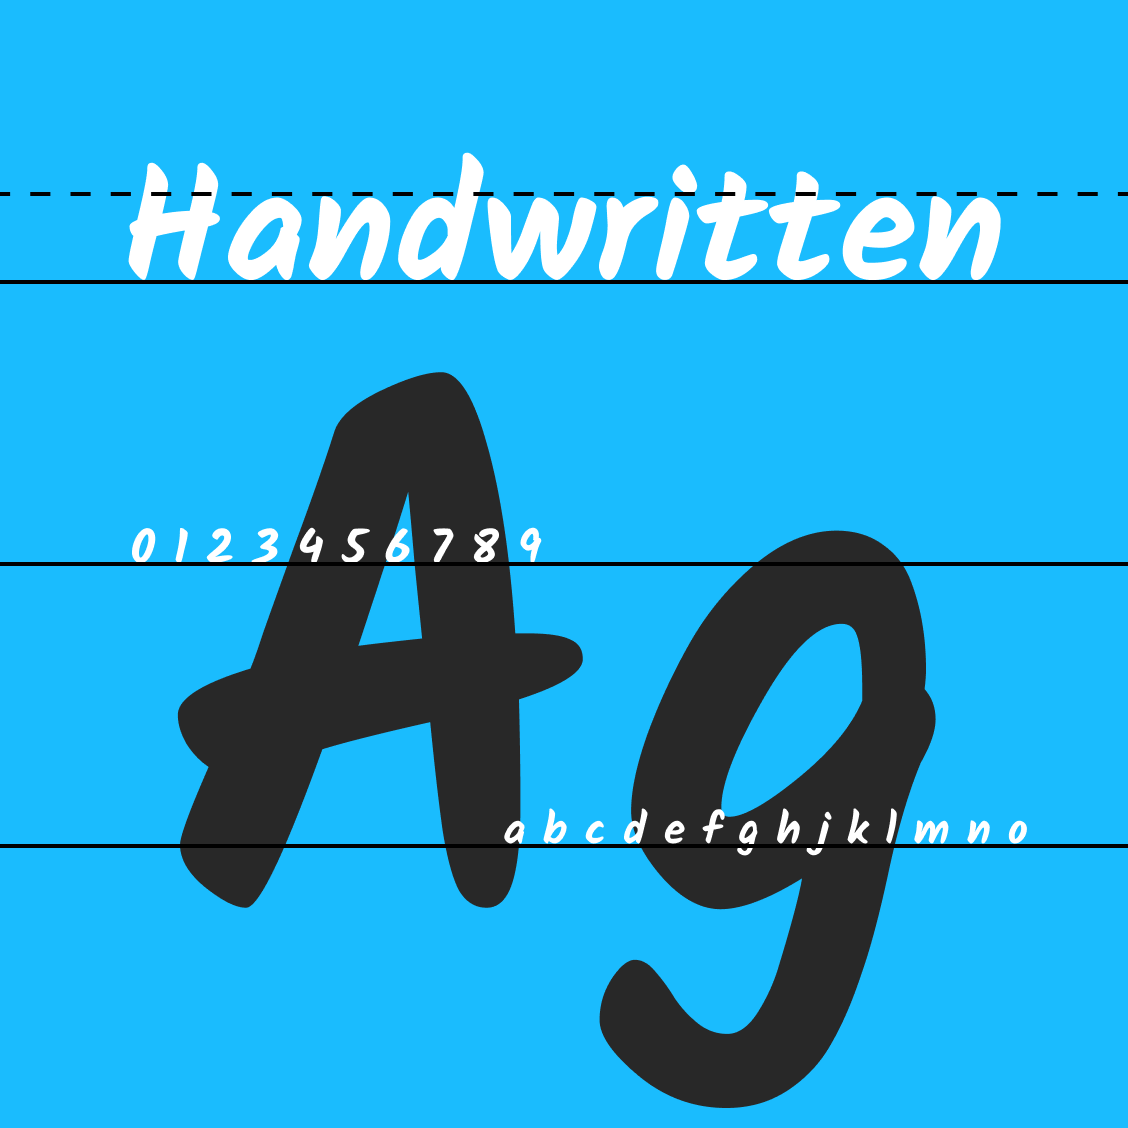 girly handwriting font generator